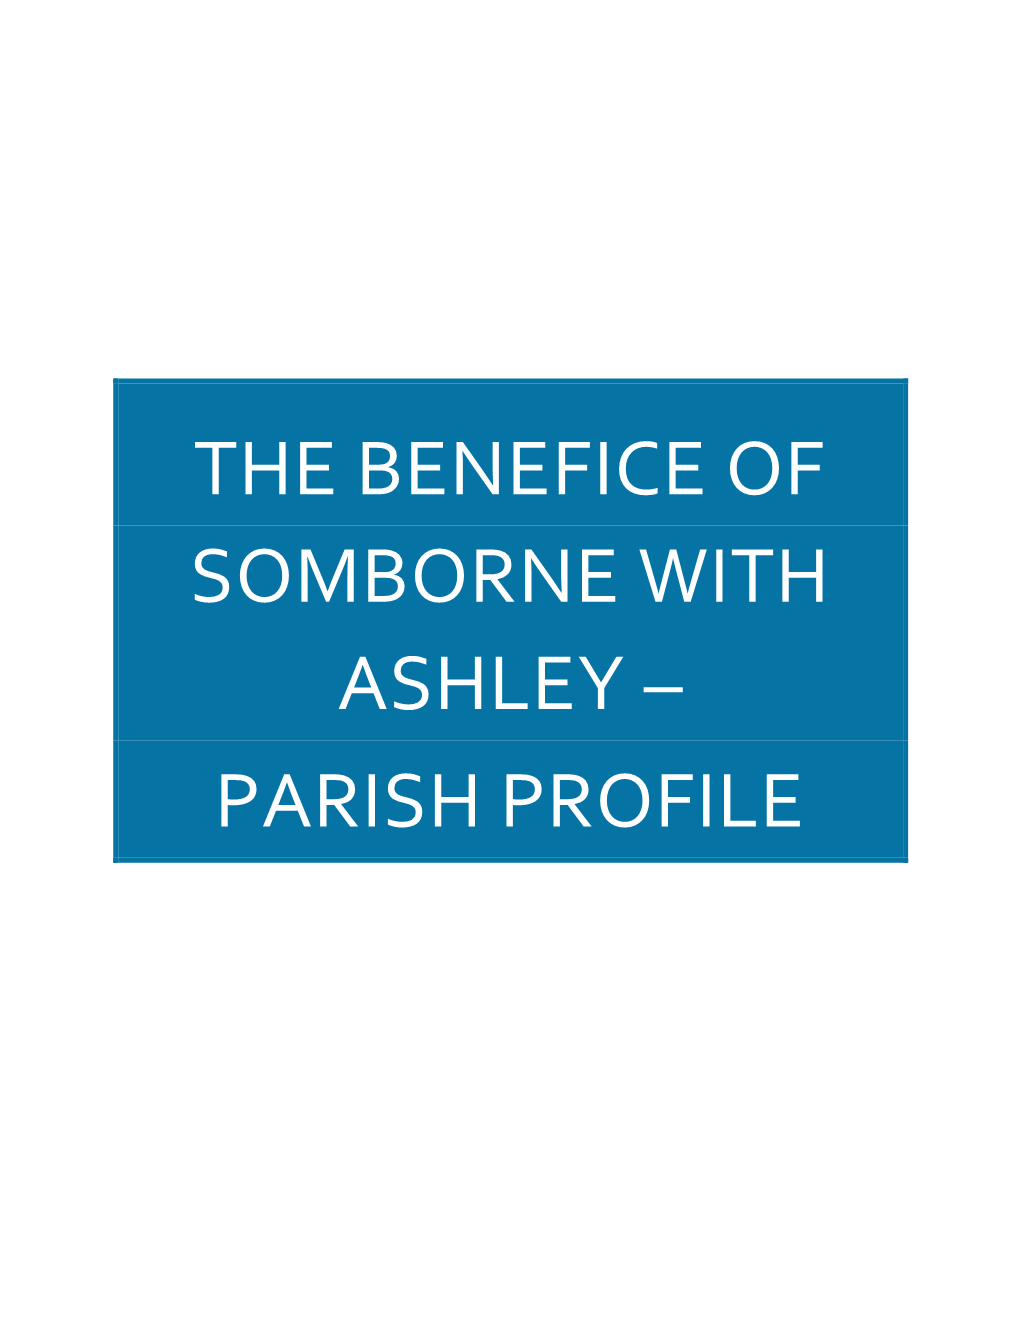 The Benefice of Somborne with Ashley – Parish Profile